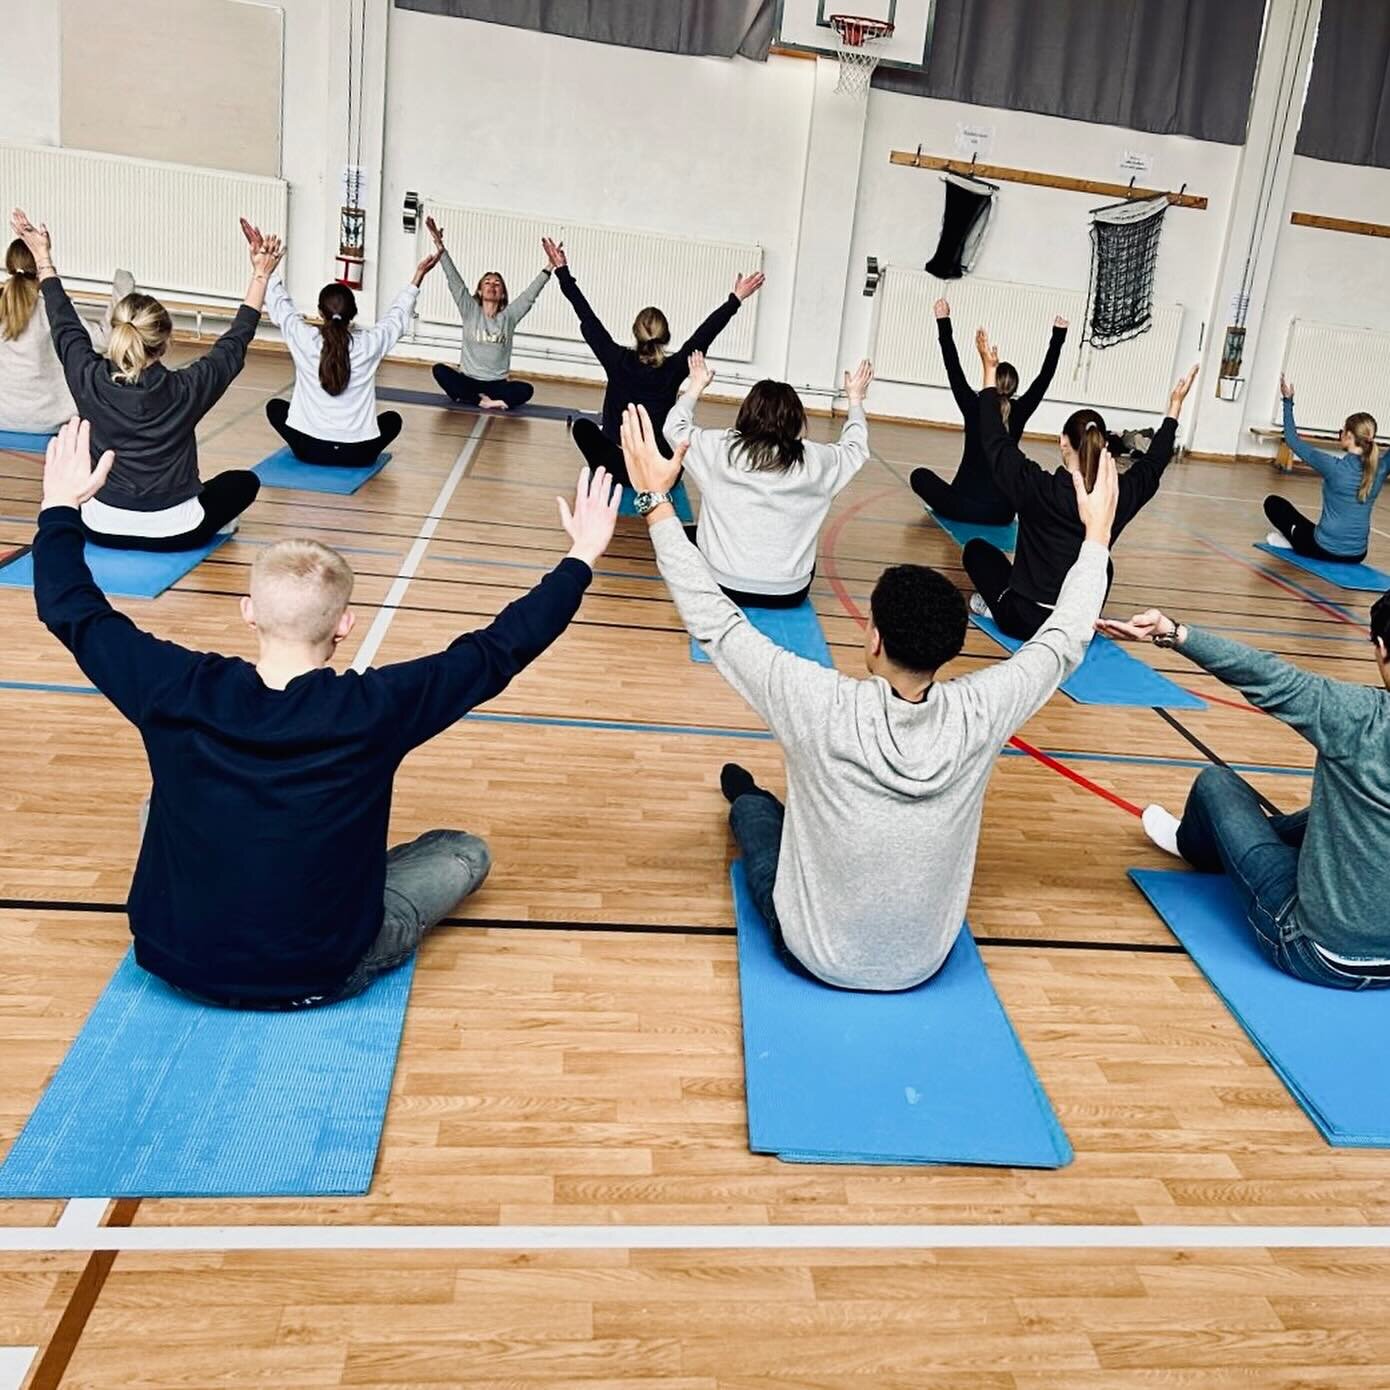 Yoga &amp; meditation p&aring; idrottsdagen✨

F&ouml;rra veckan var b&auml;sta Petra ute p&aring; Bromma gymnasium och h&ouml;ll i yoga och meditationsklasser som en del av deras idrottsdag. 

Det &auml;r s&aring; fint att se att fler skolor vill erb